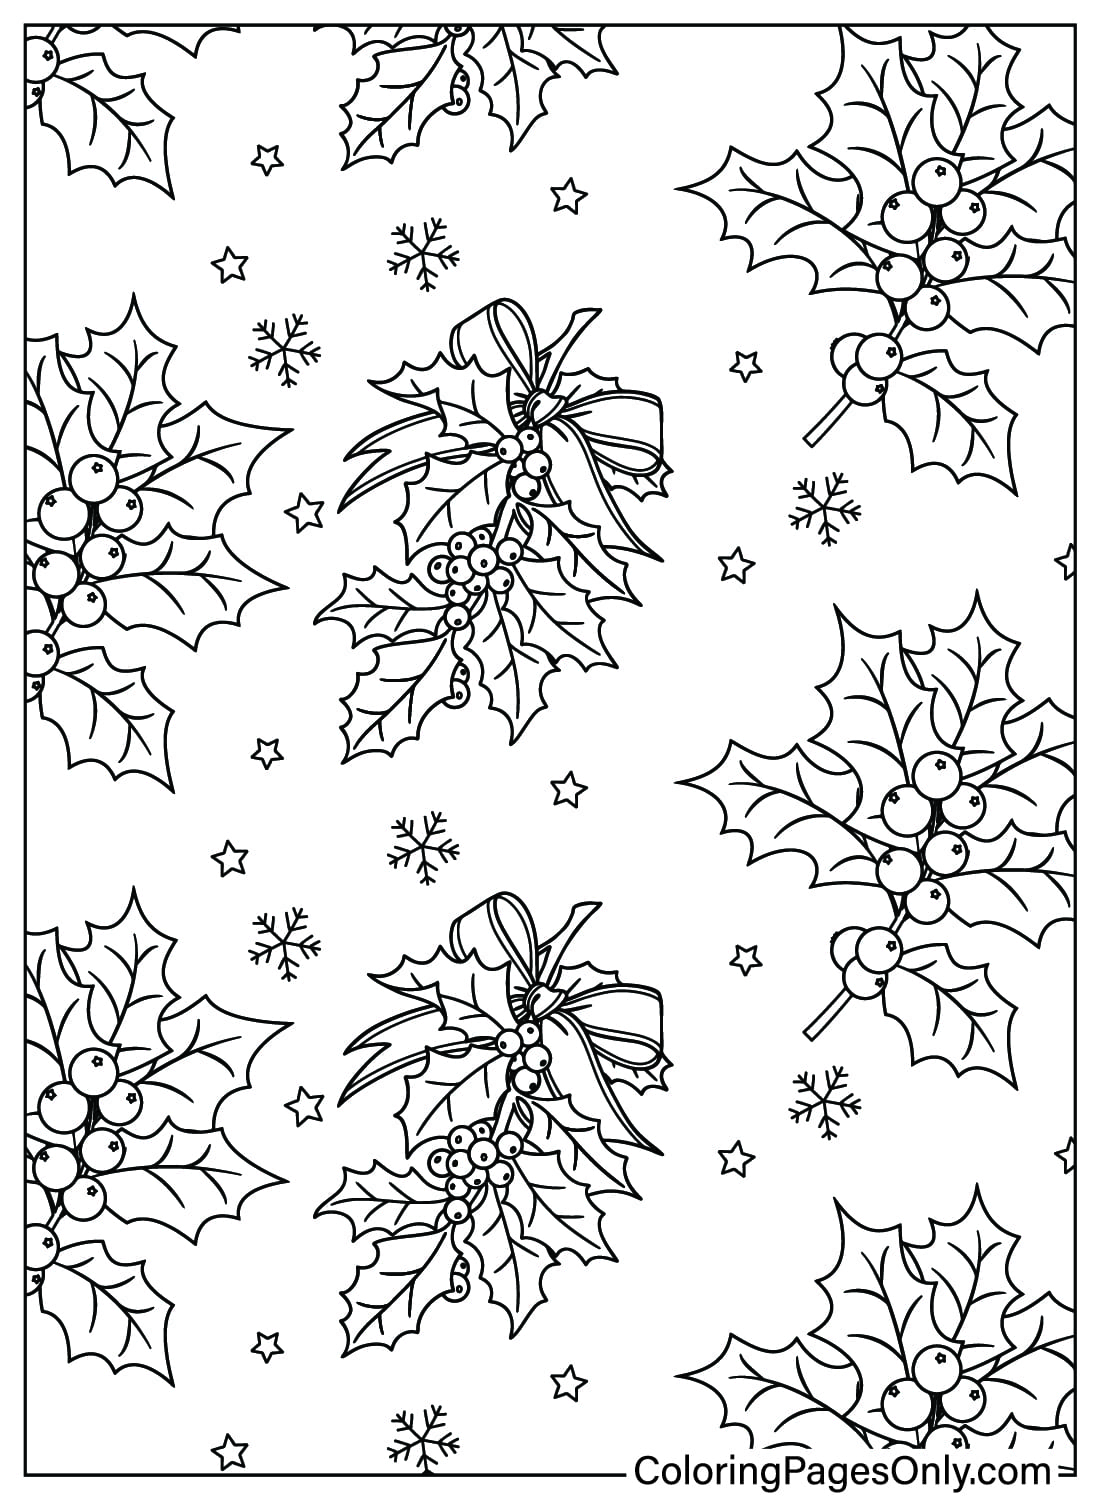 Página para colorear de patrón de acebo navideño de Patrón de Navidad